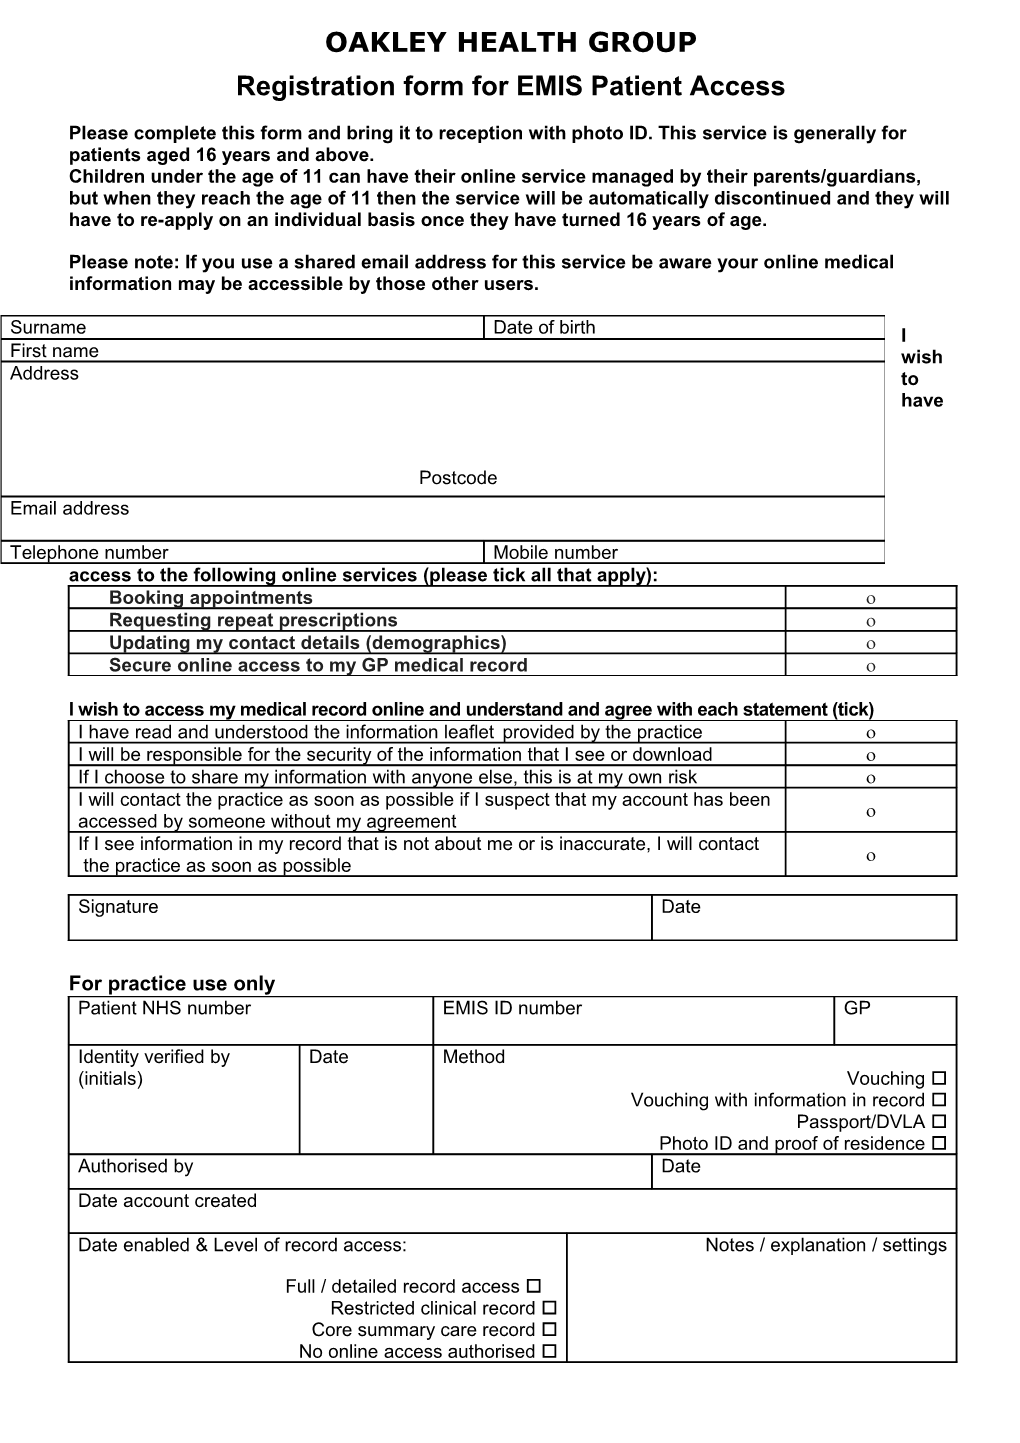 Registration Form for EMIS Patient Access